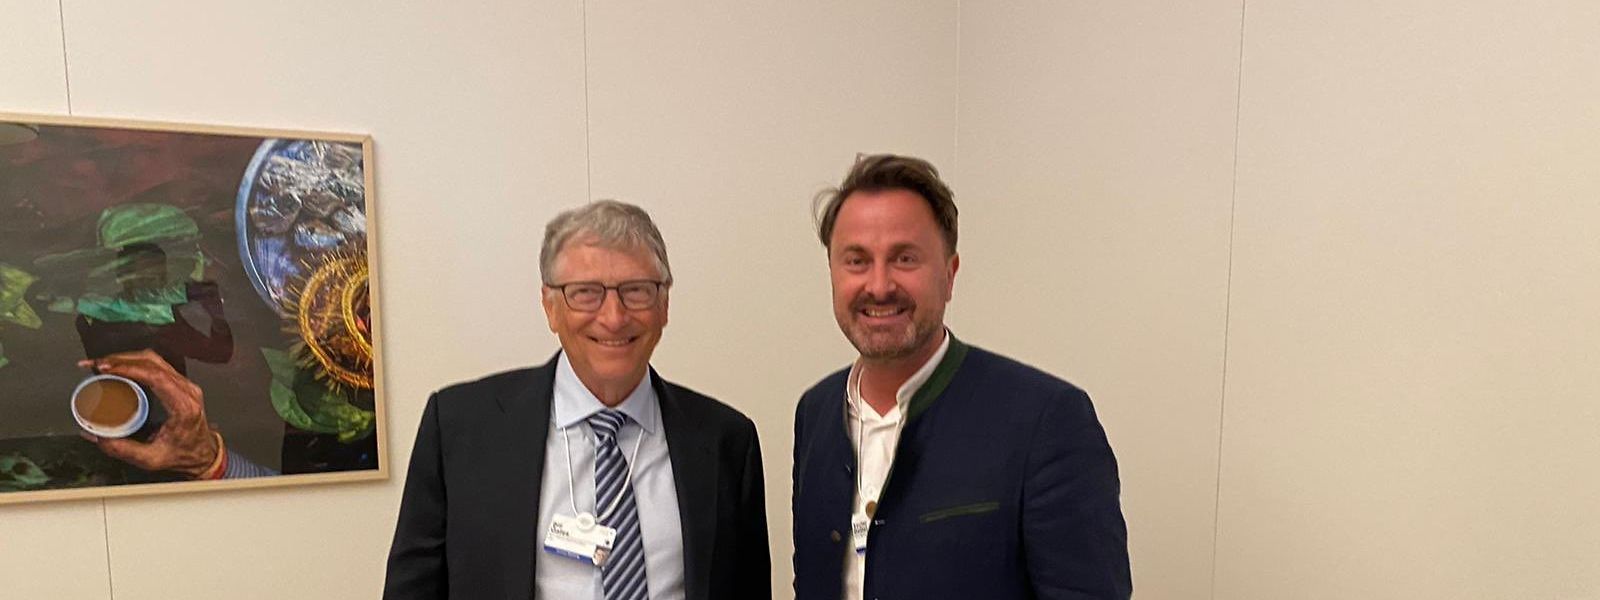 Der Premierminister traf unter anderem mit dem früheren Microsoft-Chef und Vorsitzenden der Bill & Melinda Gates Foundation, Bill Gates, zusammen.